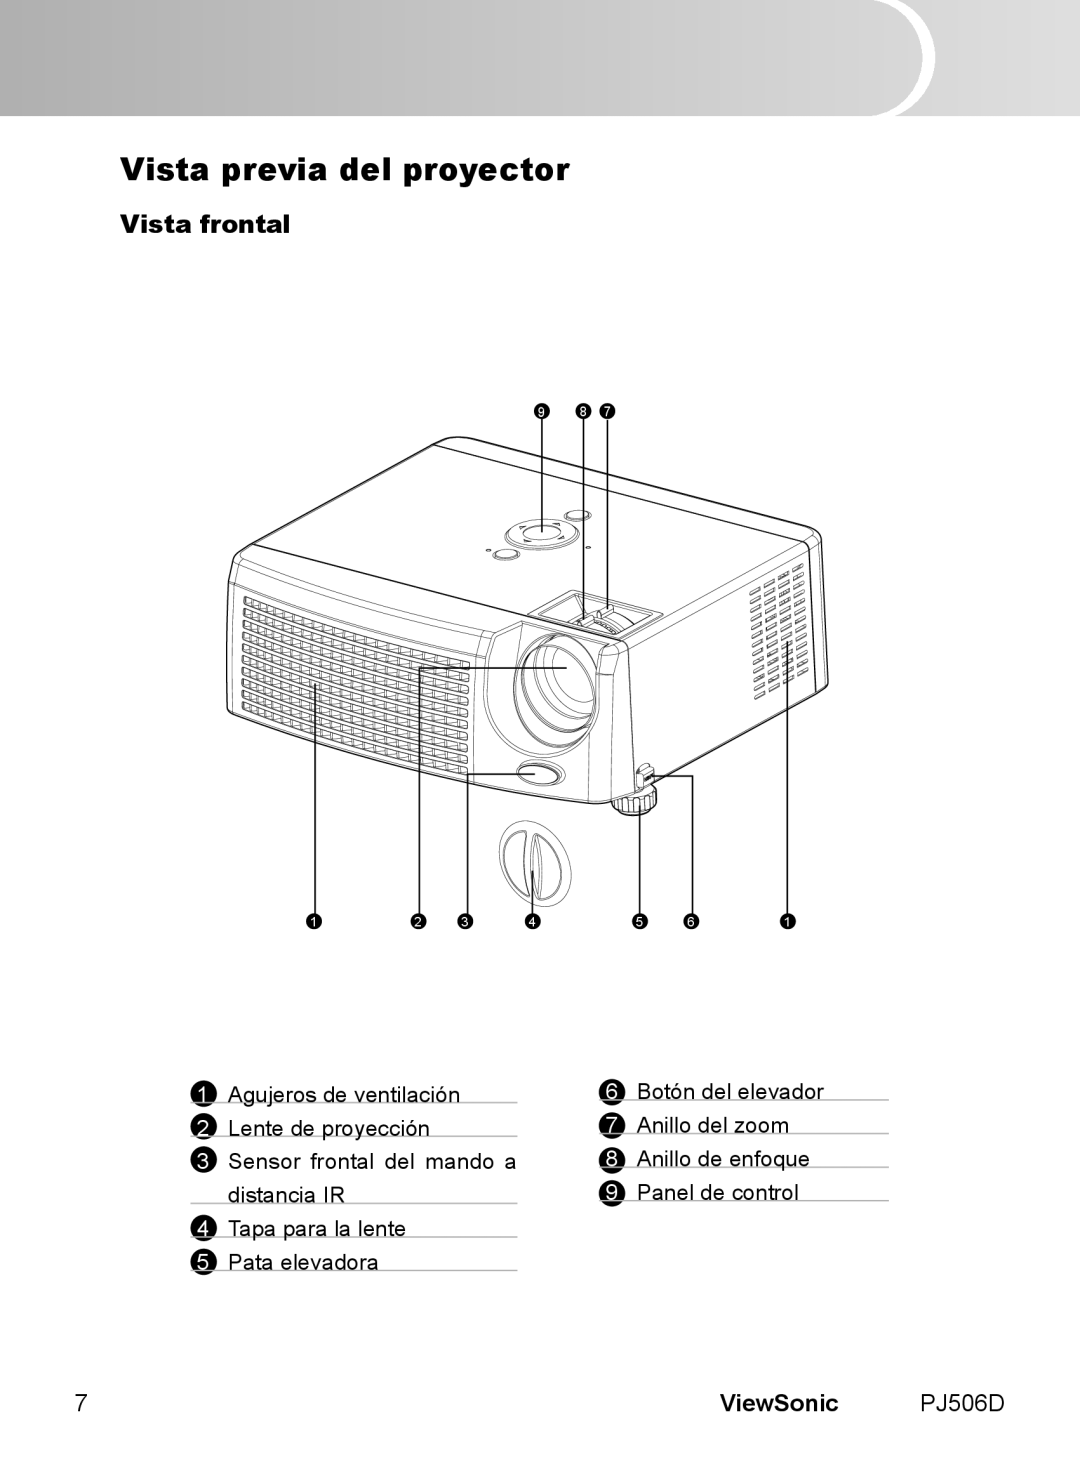 ViewSonic VS11452 manual Vista previa del proyector, Vista frontal, ViewSonic PJ506D 